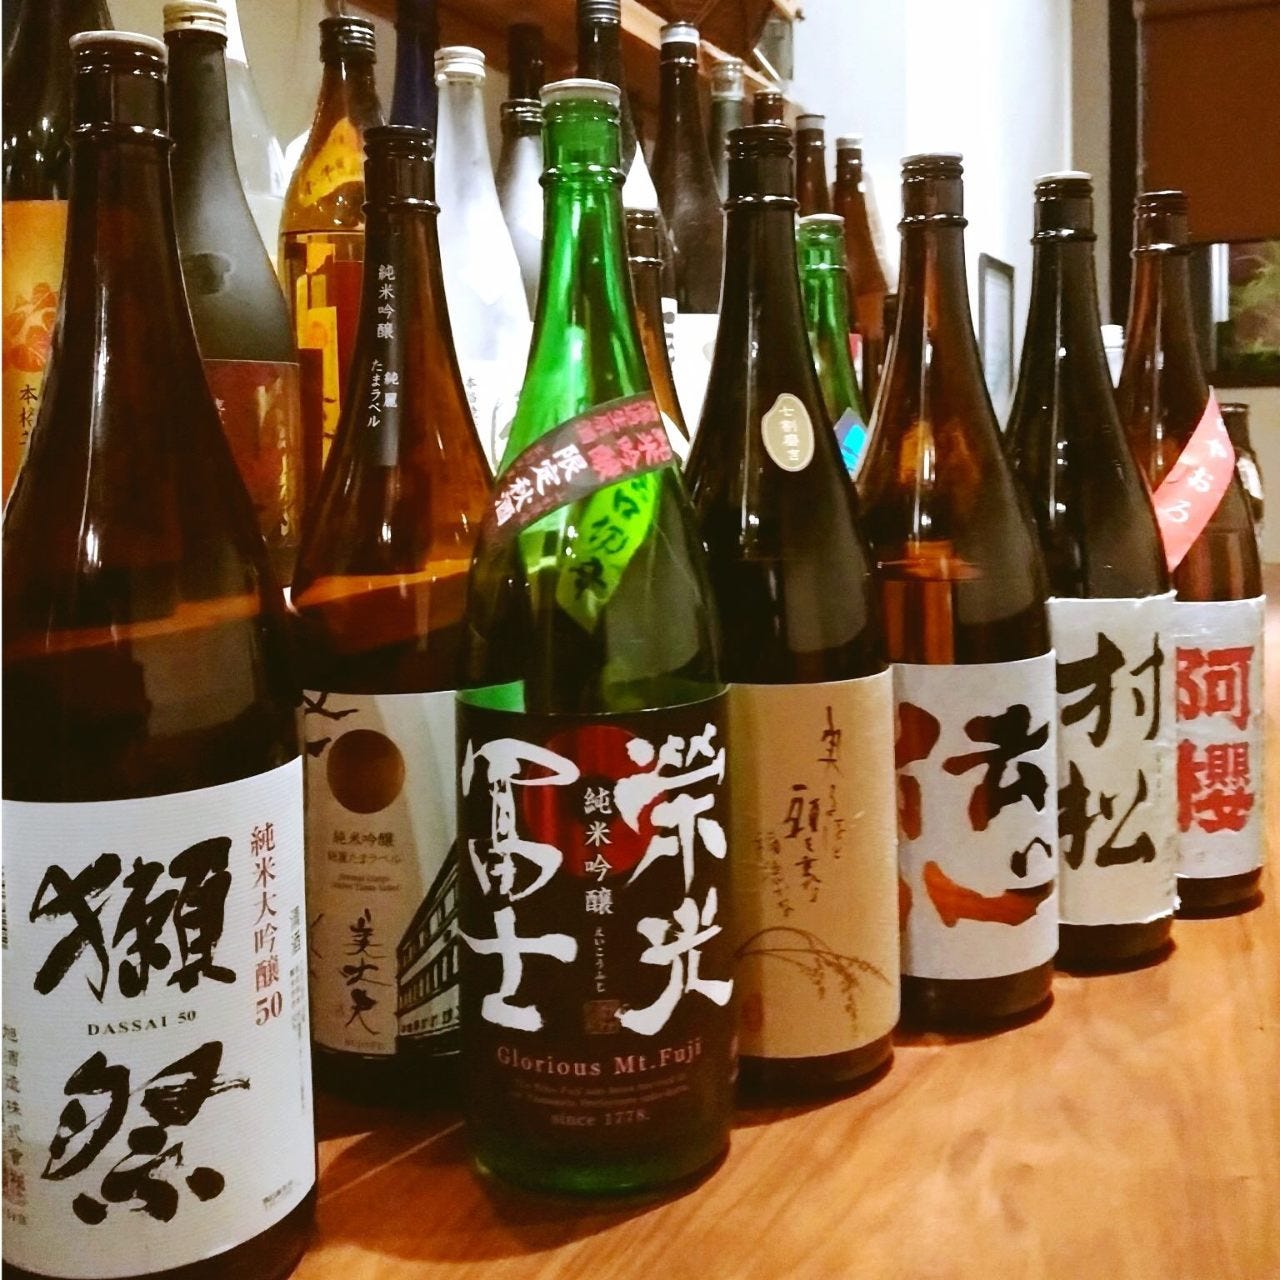 日本酒は仕入れの状況により銘柄が変わります。